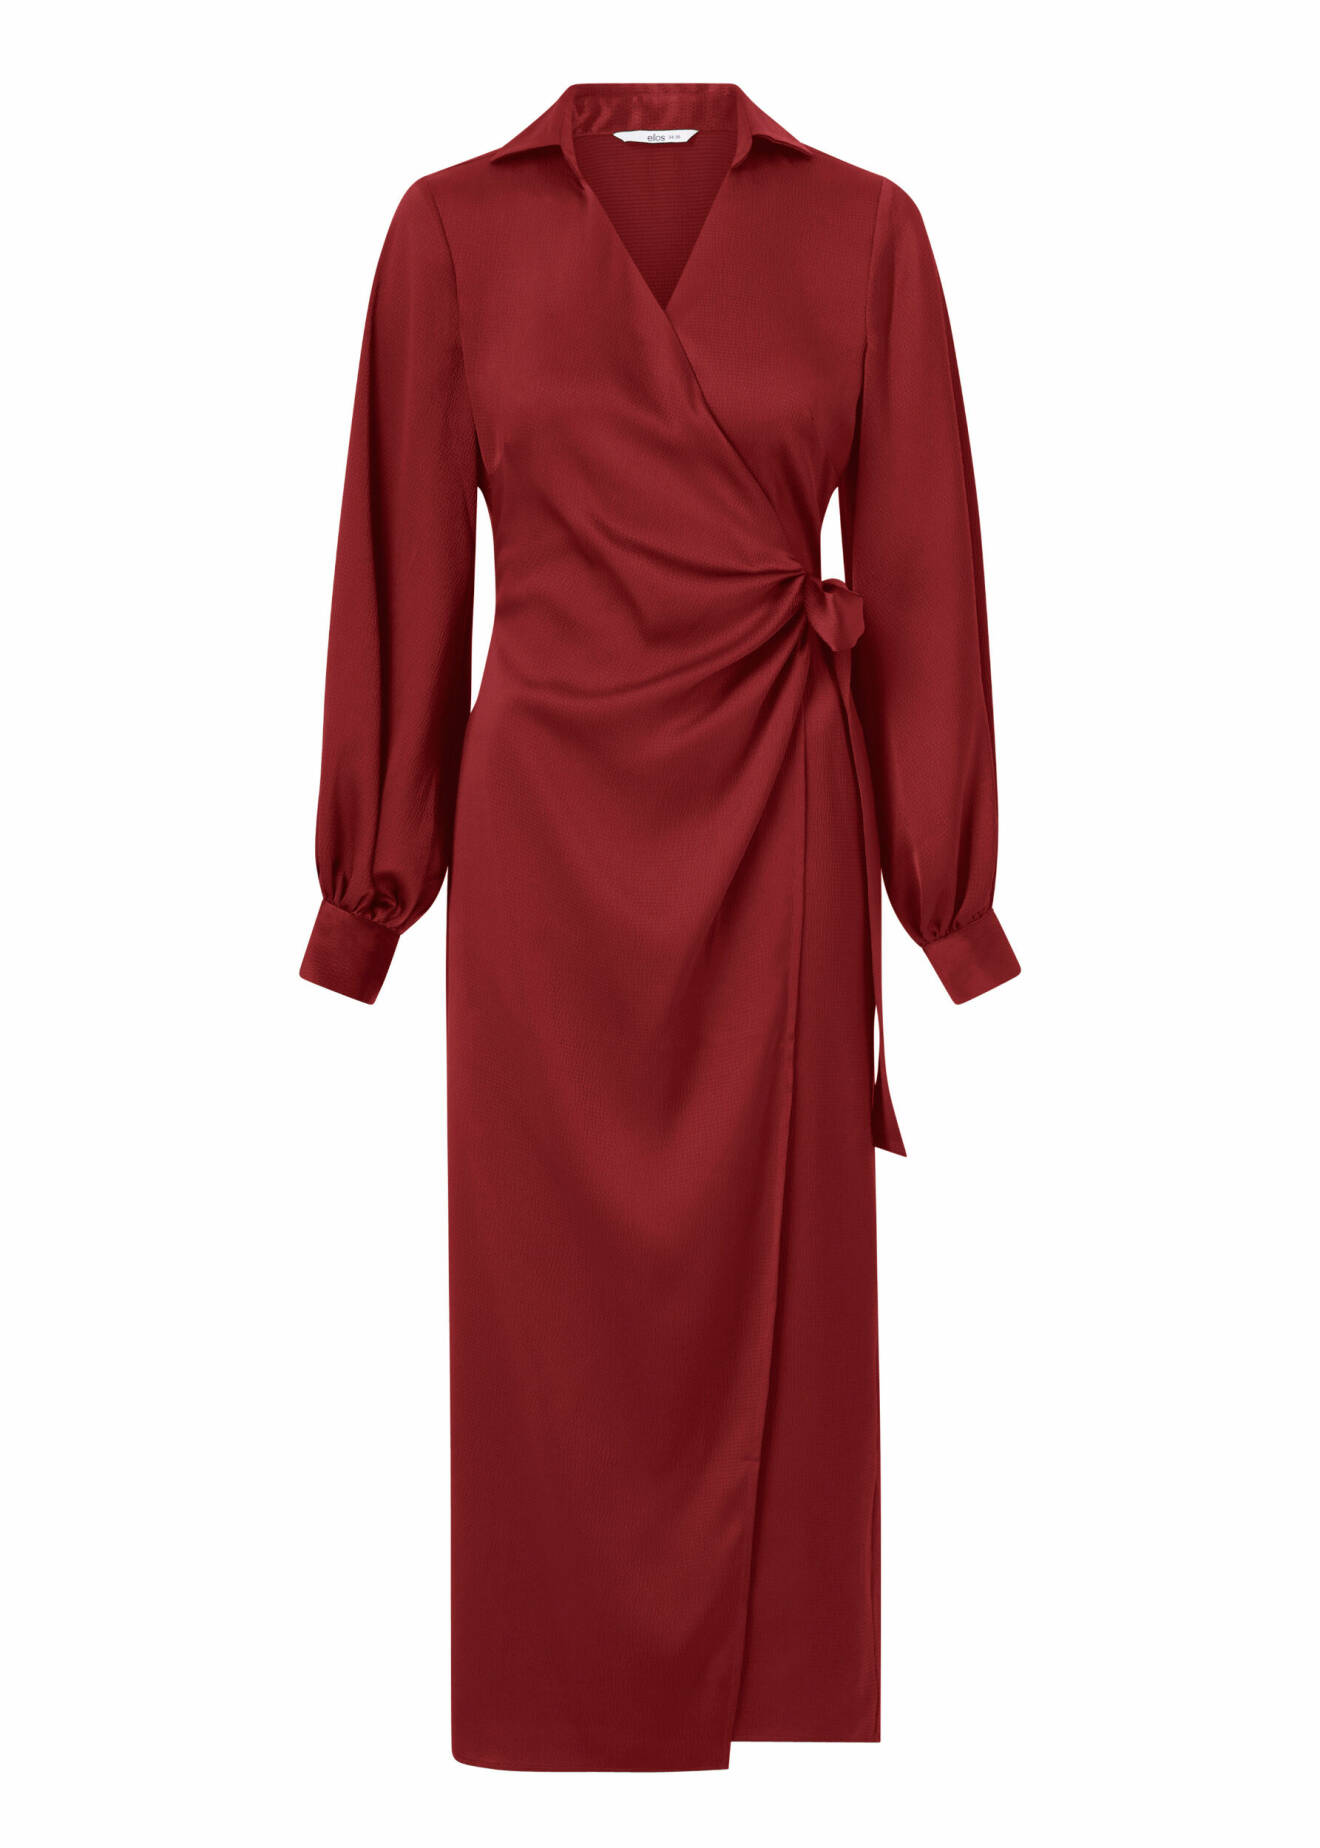 Röd klänning perfekt till julafton, från Ellos.